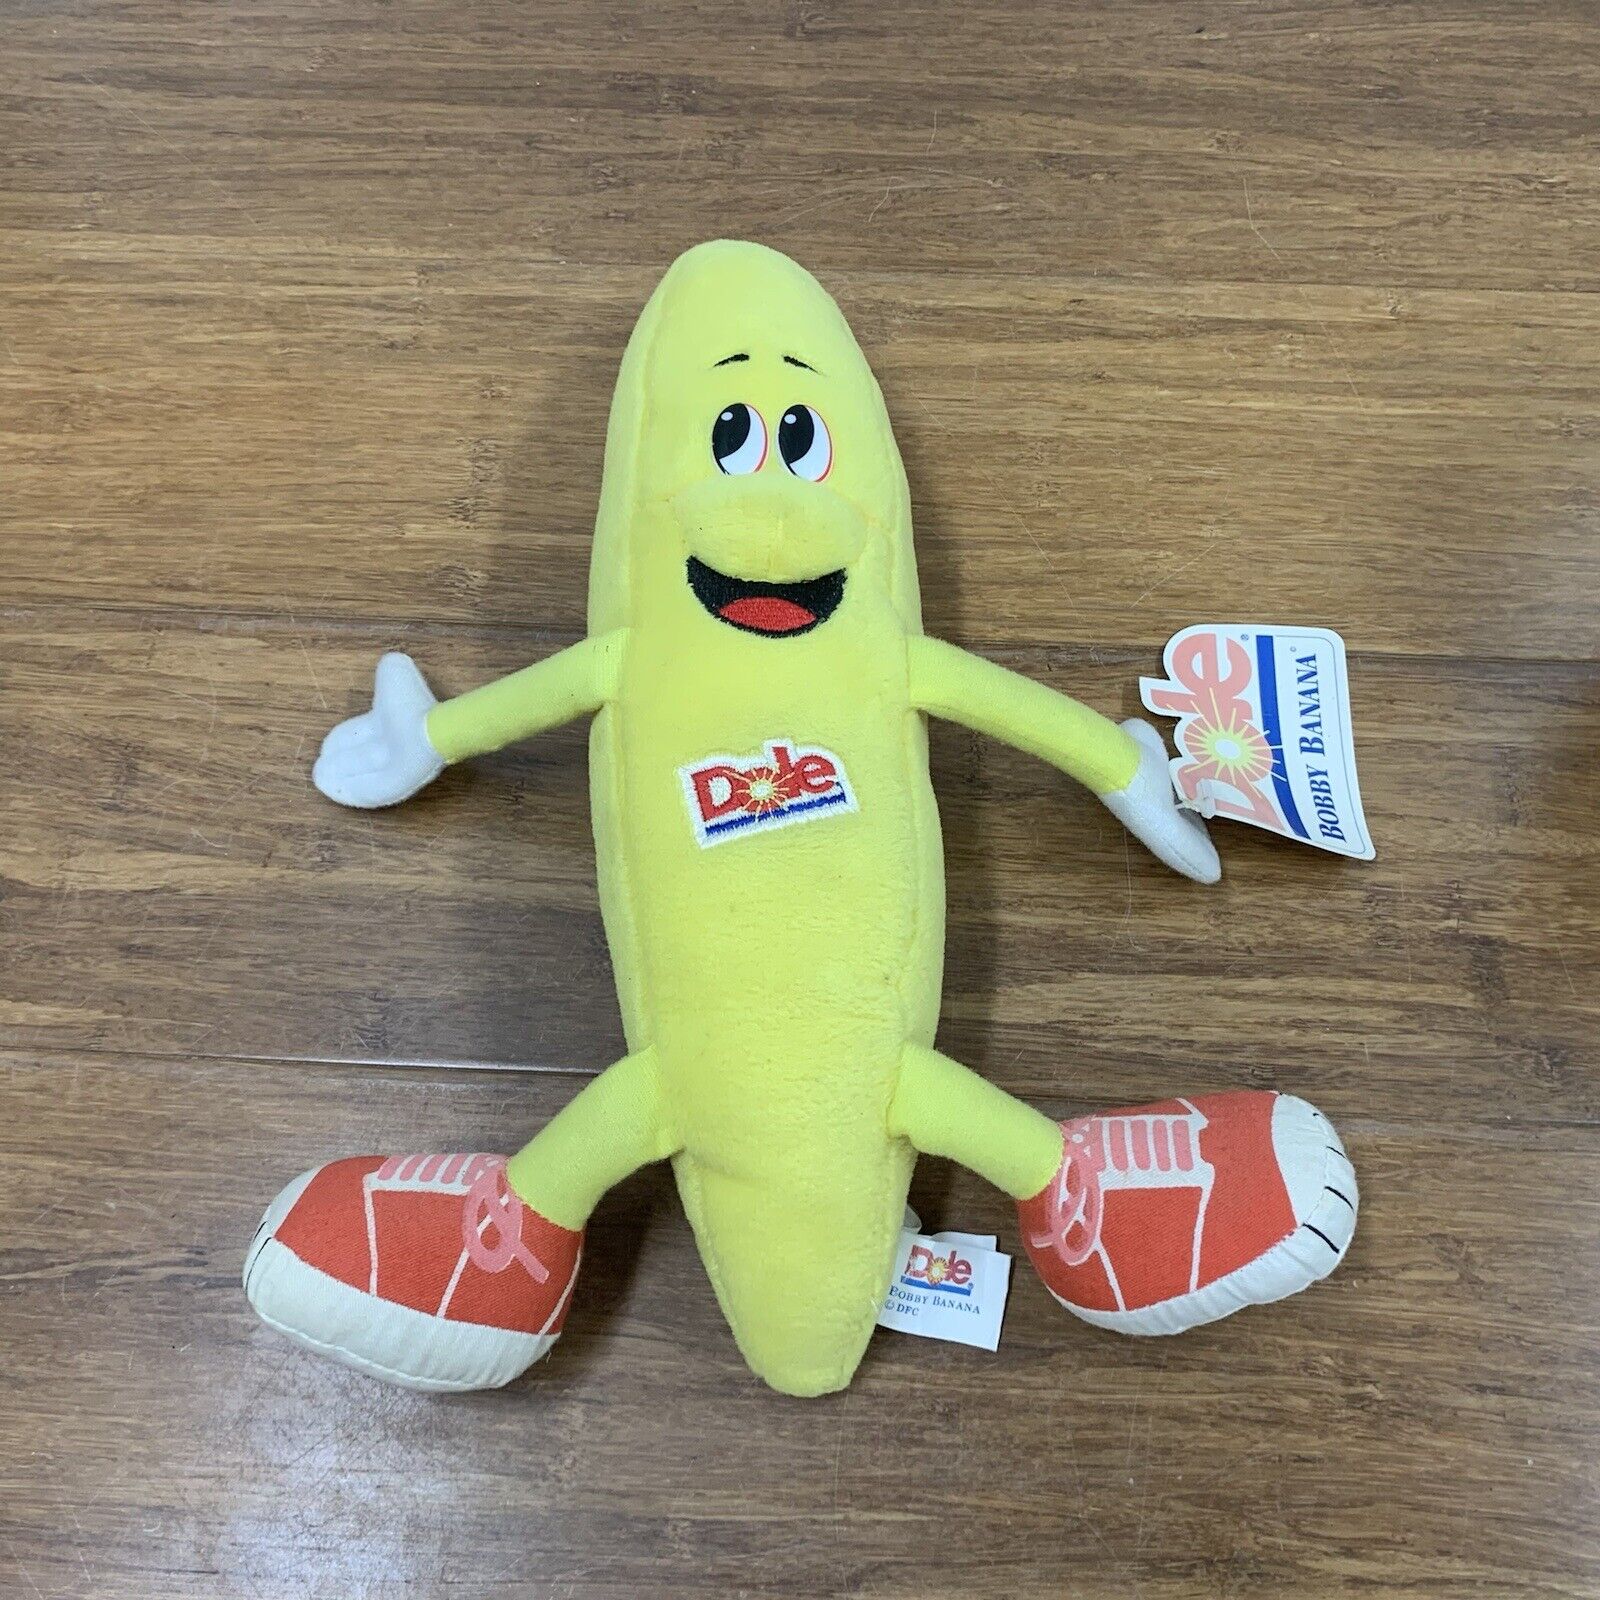 Vintage 1997 Dole Fruit Advertising Promo Bobby Banana Plush Toy 12" Long